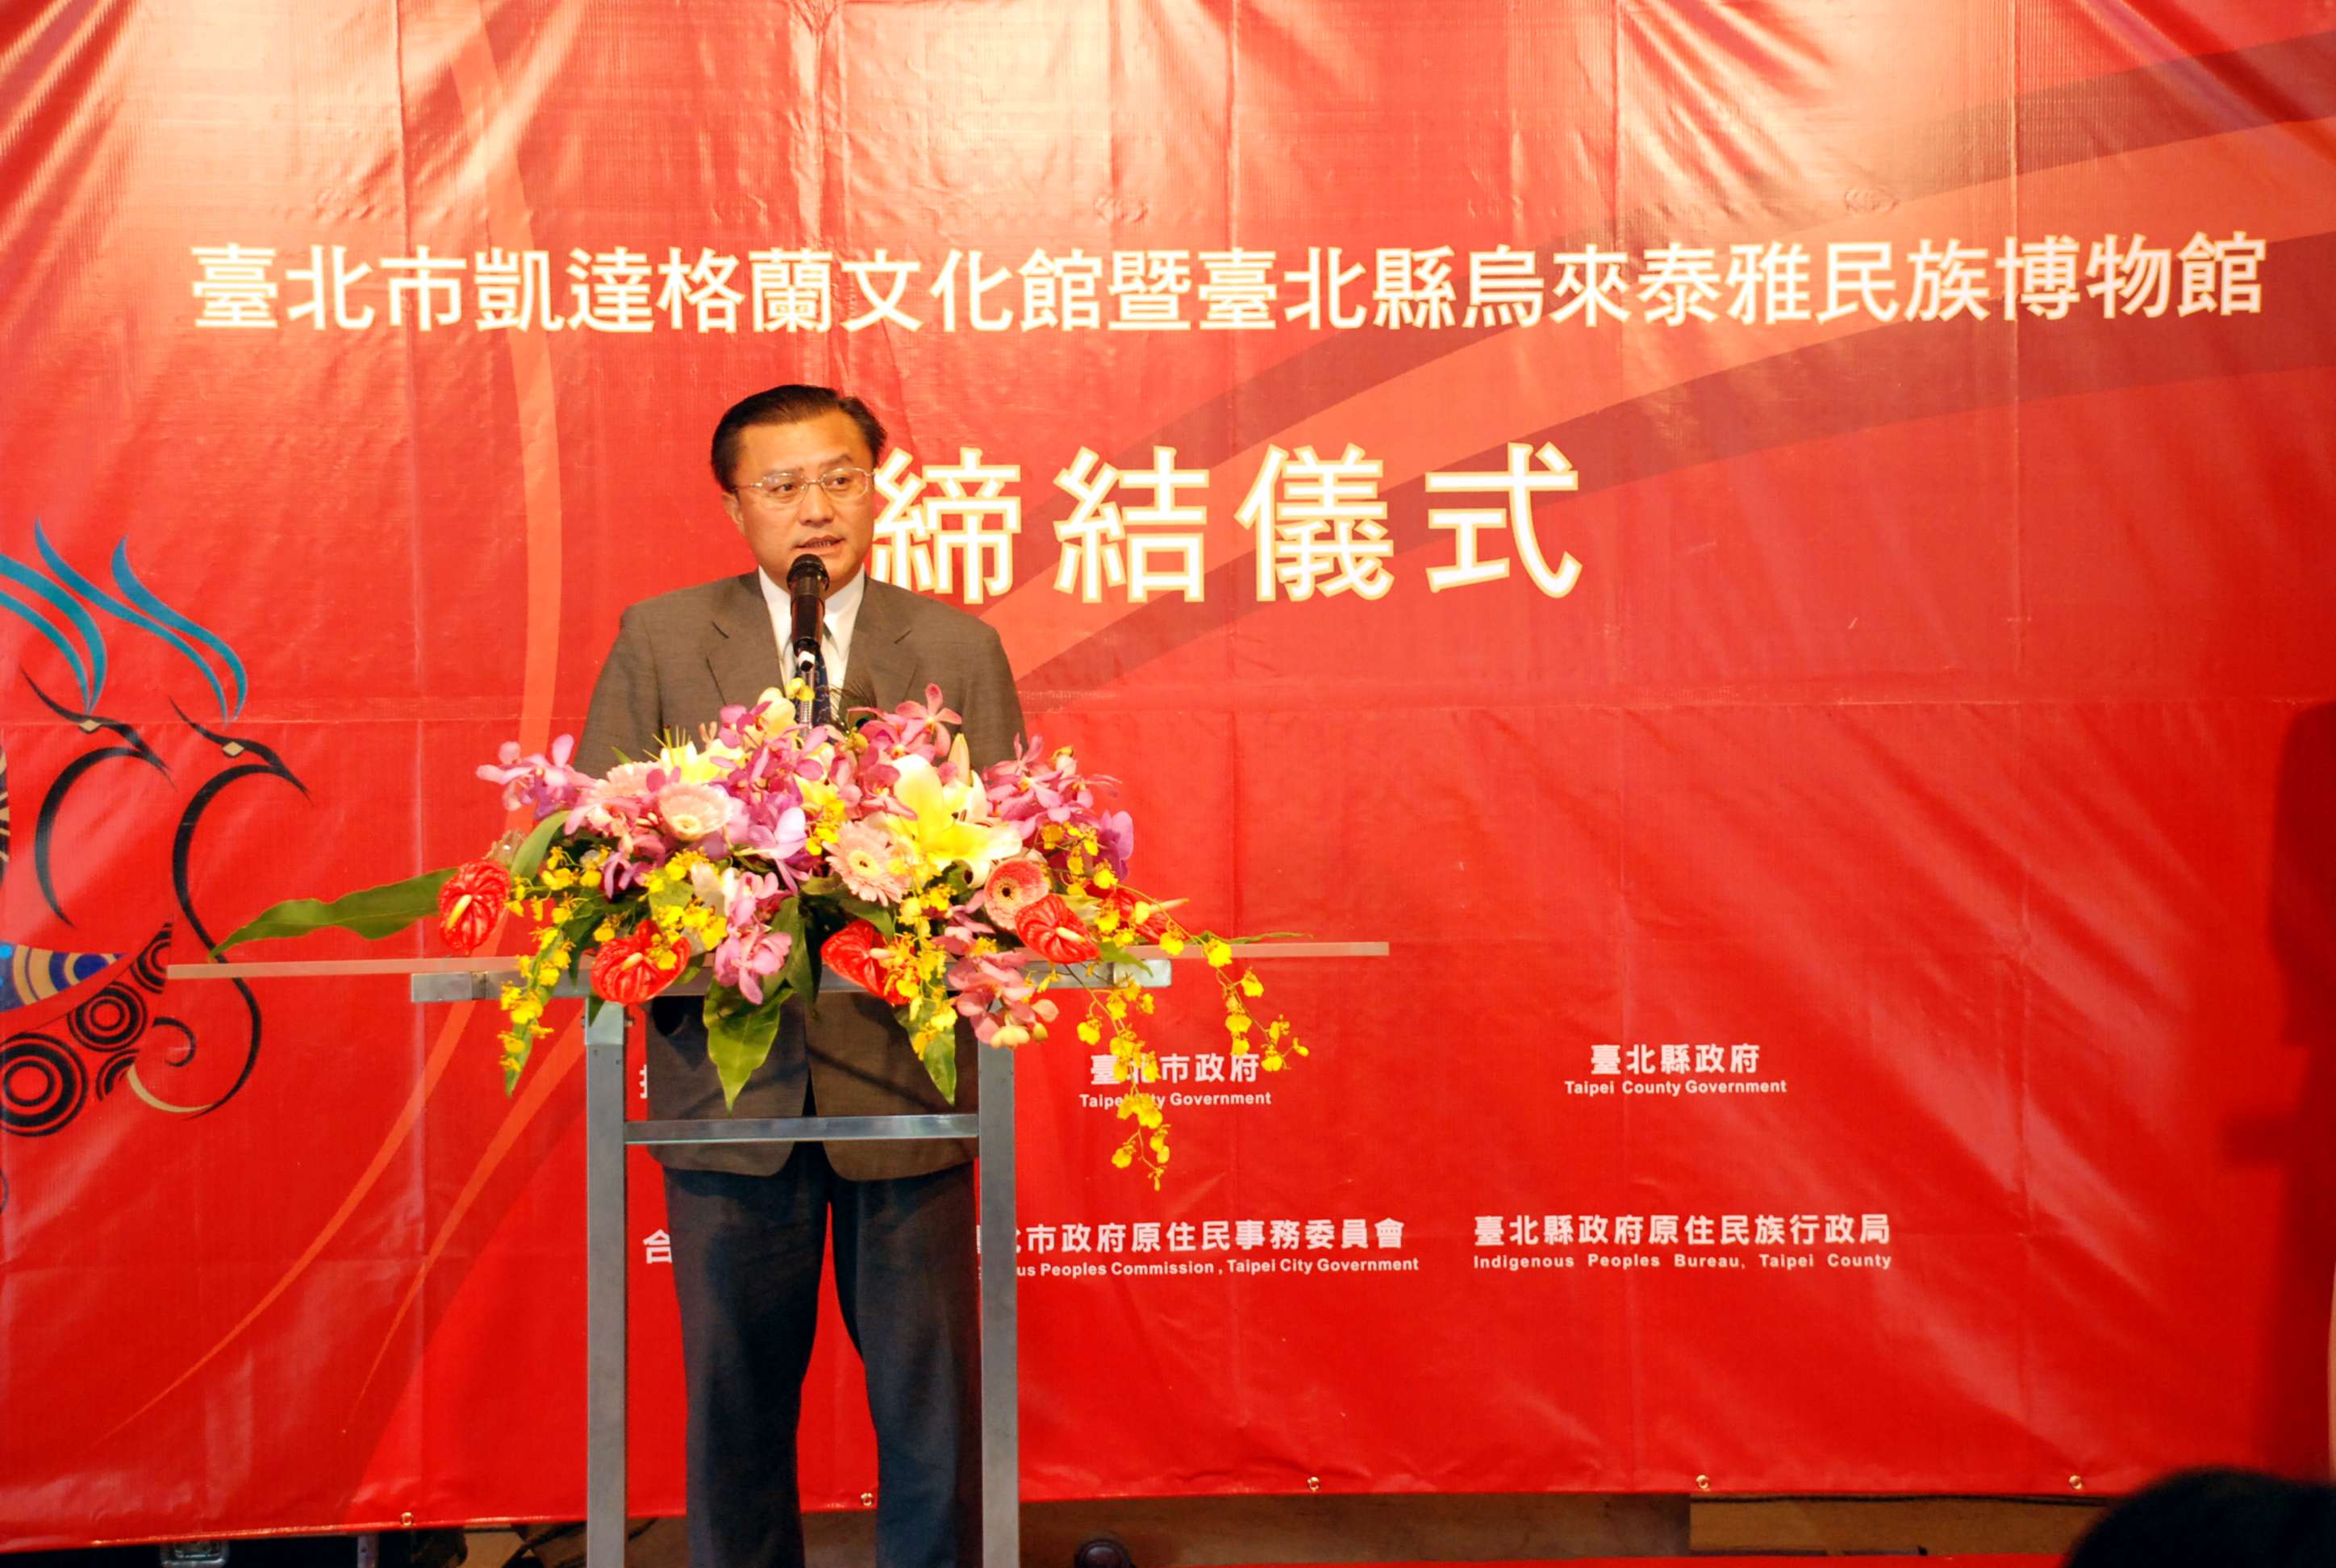 Legislator Wen Ji, Kong’s addreee